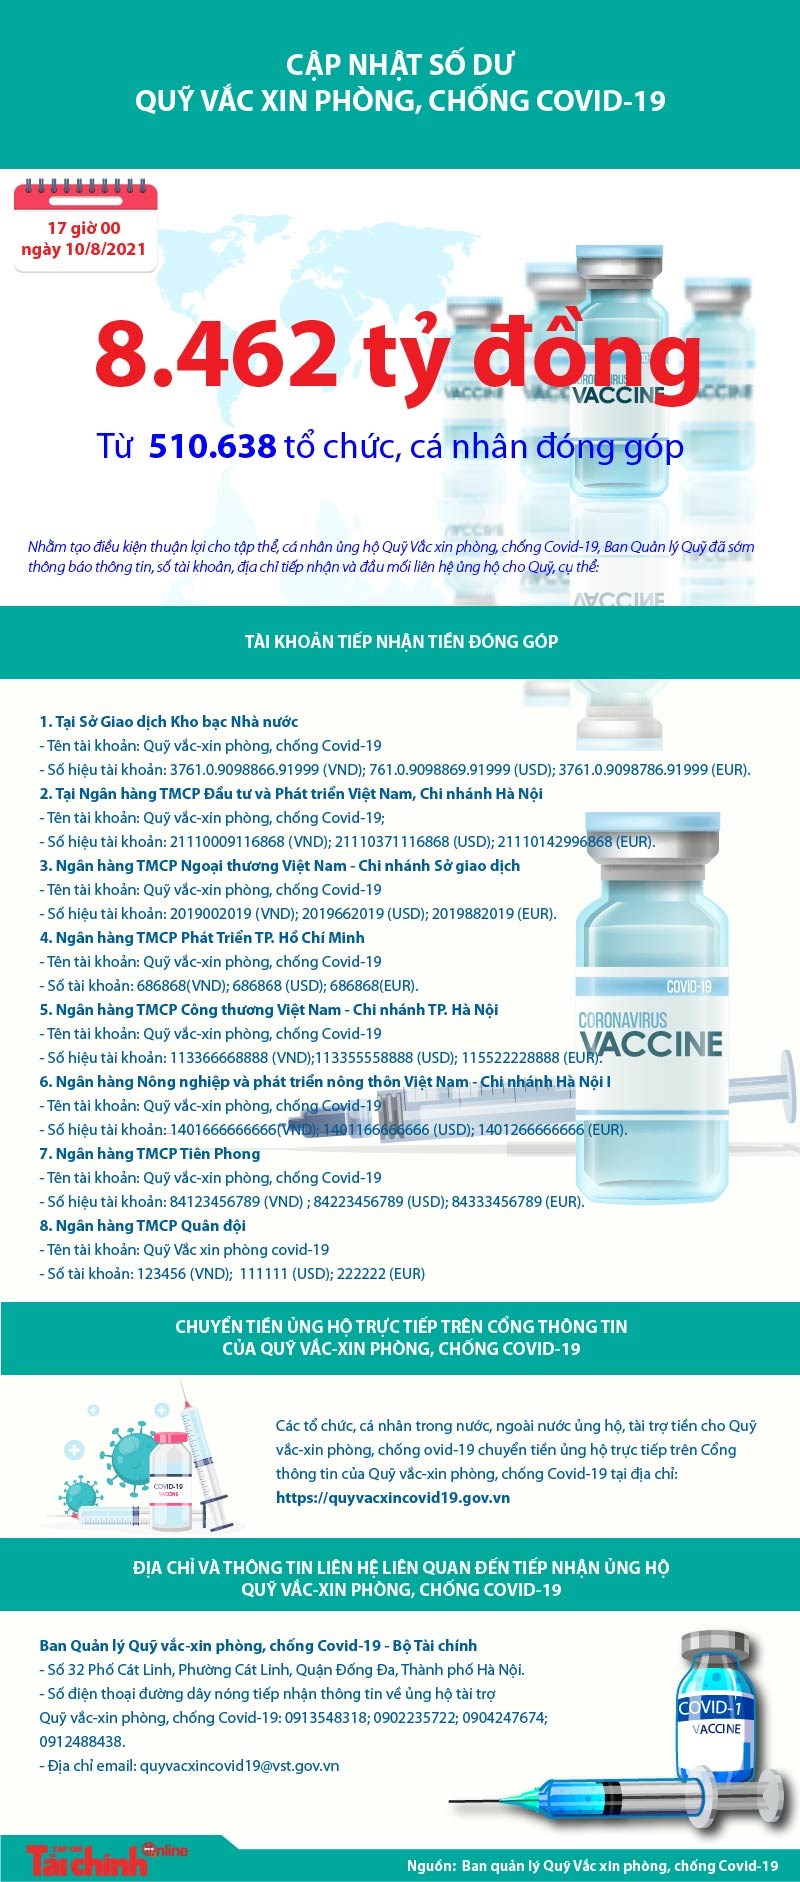 [Infographics] Quỹ Vắc xin phòng, chống COVID-19 đã tiếp nhận ủng hộ 8.462 tỷ đồng - Ảnh 1